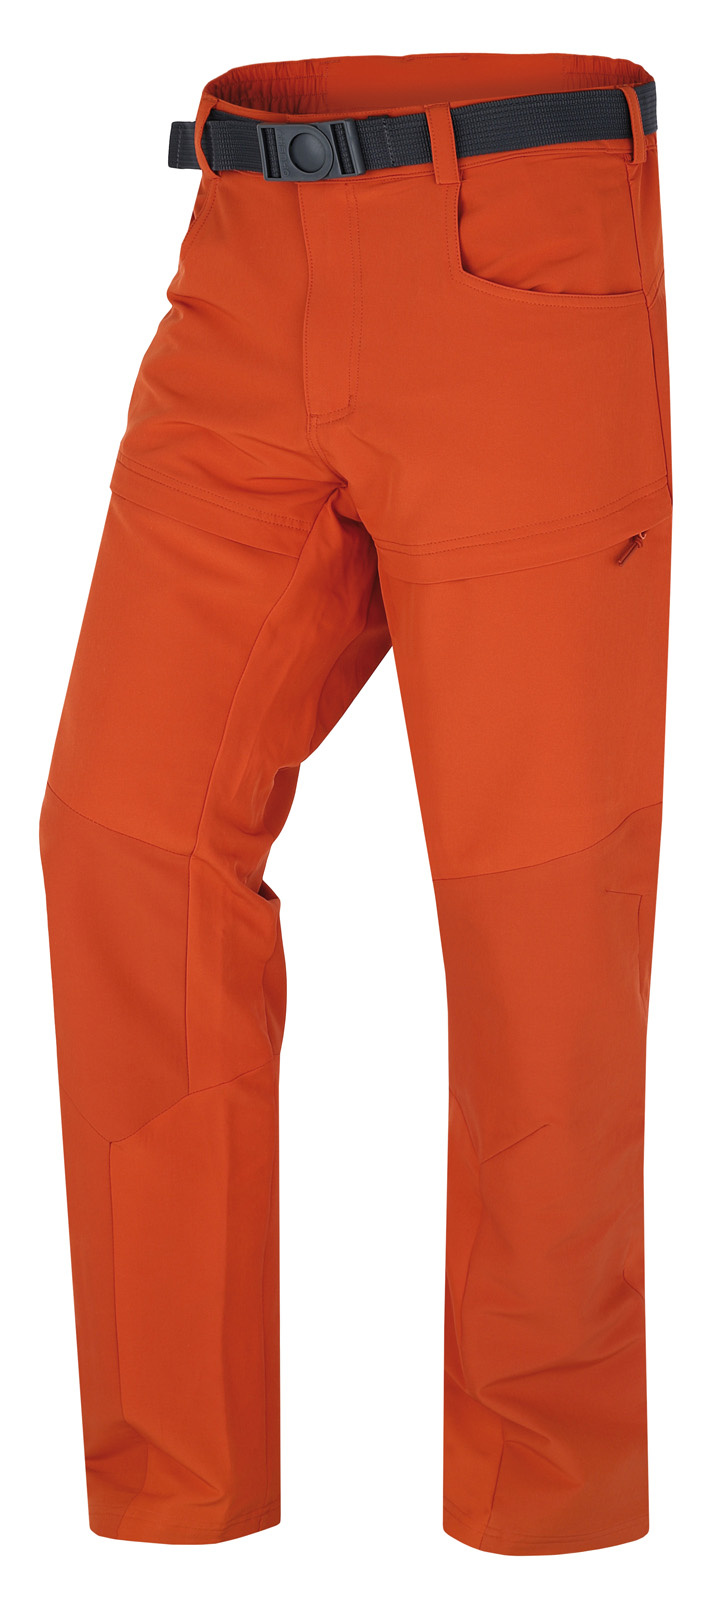 Pánské outdoorové kalhoty HUSKY Keiry oranžové Velikost: XL